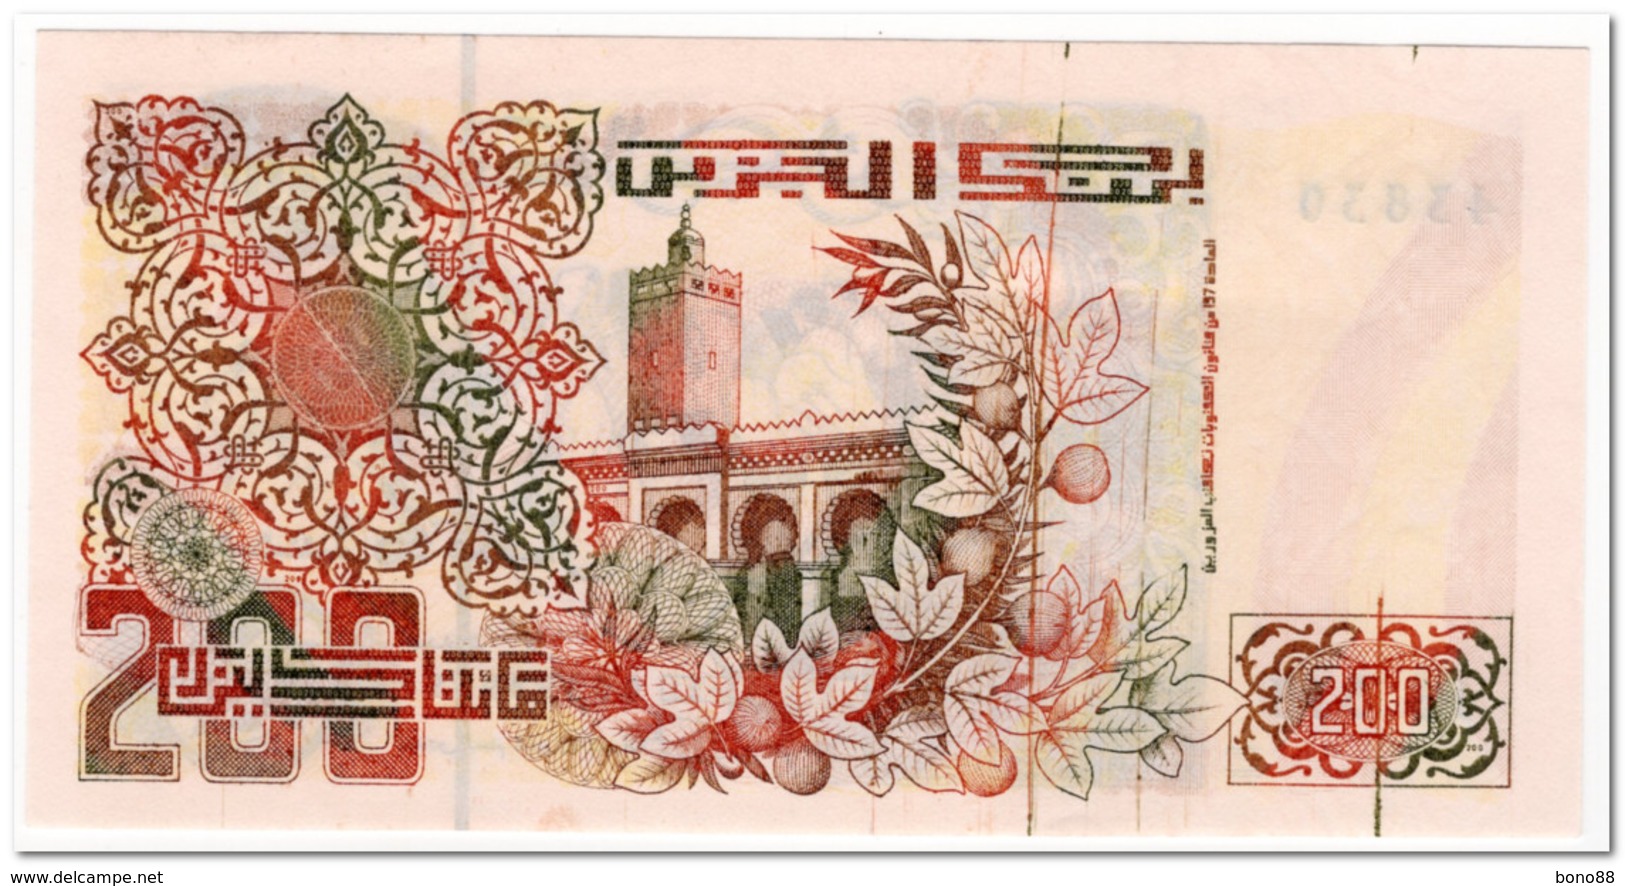 ALGERIA,200 DINARS,1992,P.138,UNC - Argelia